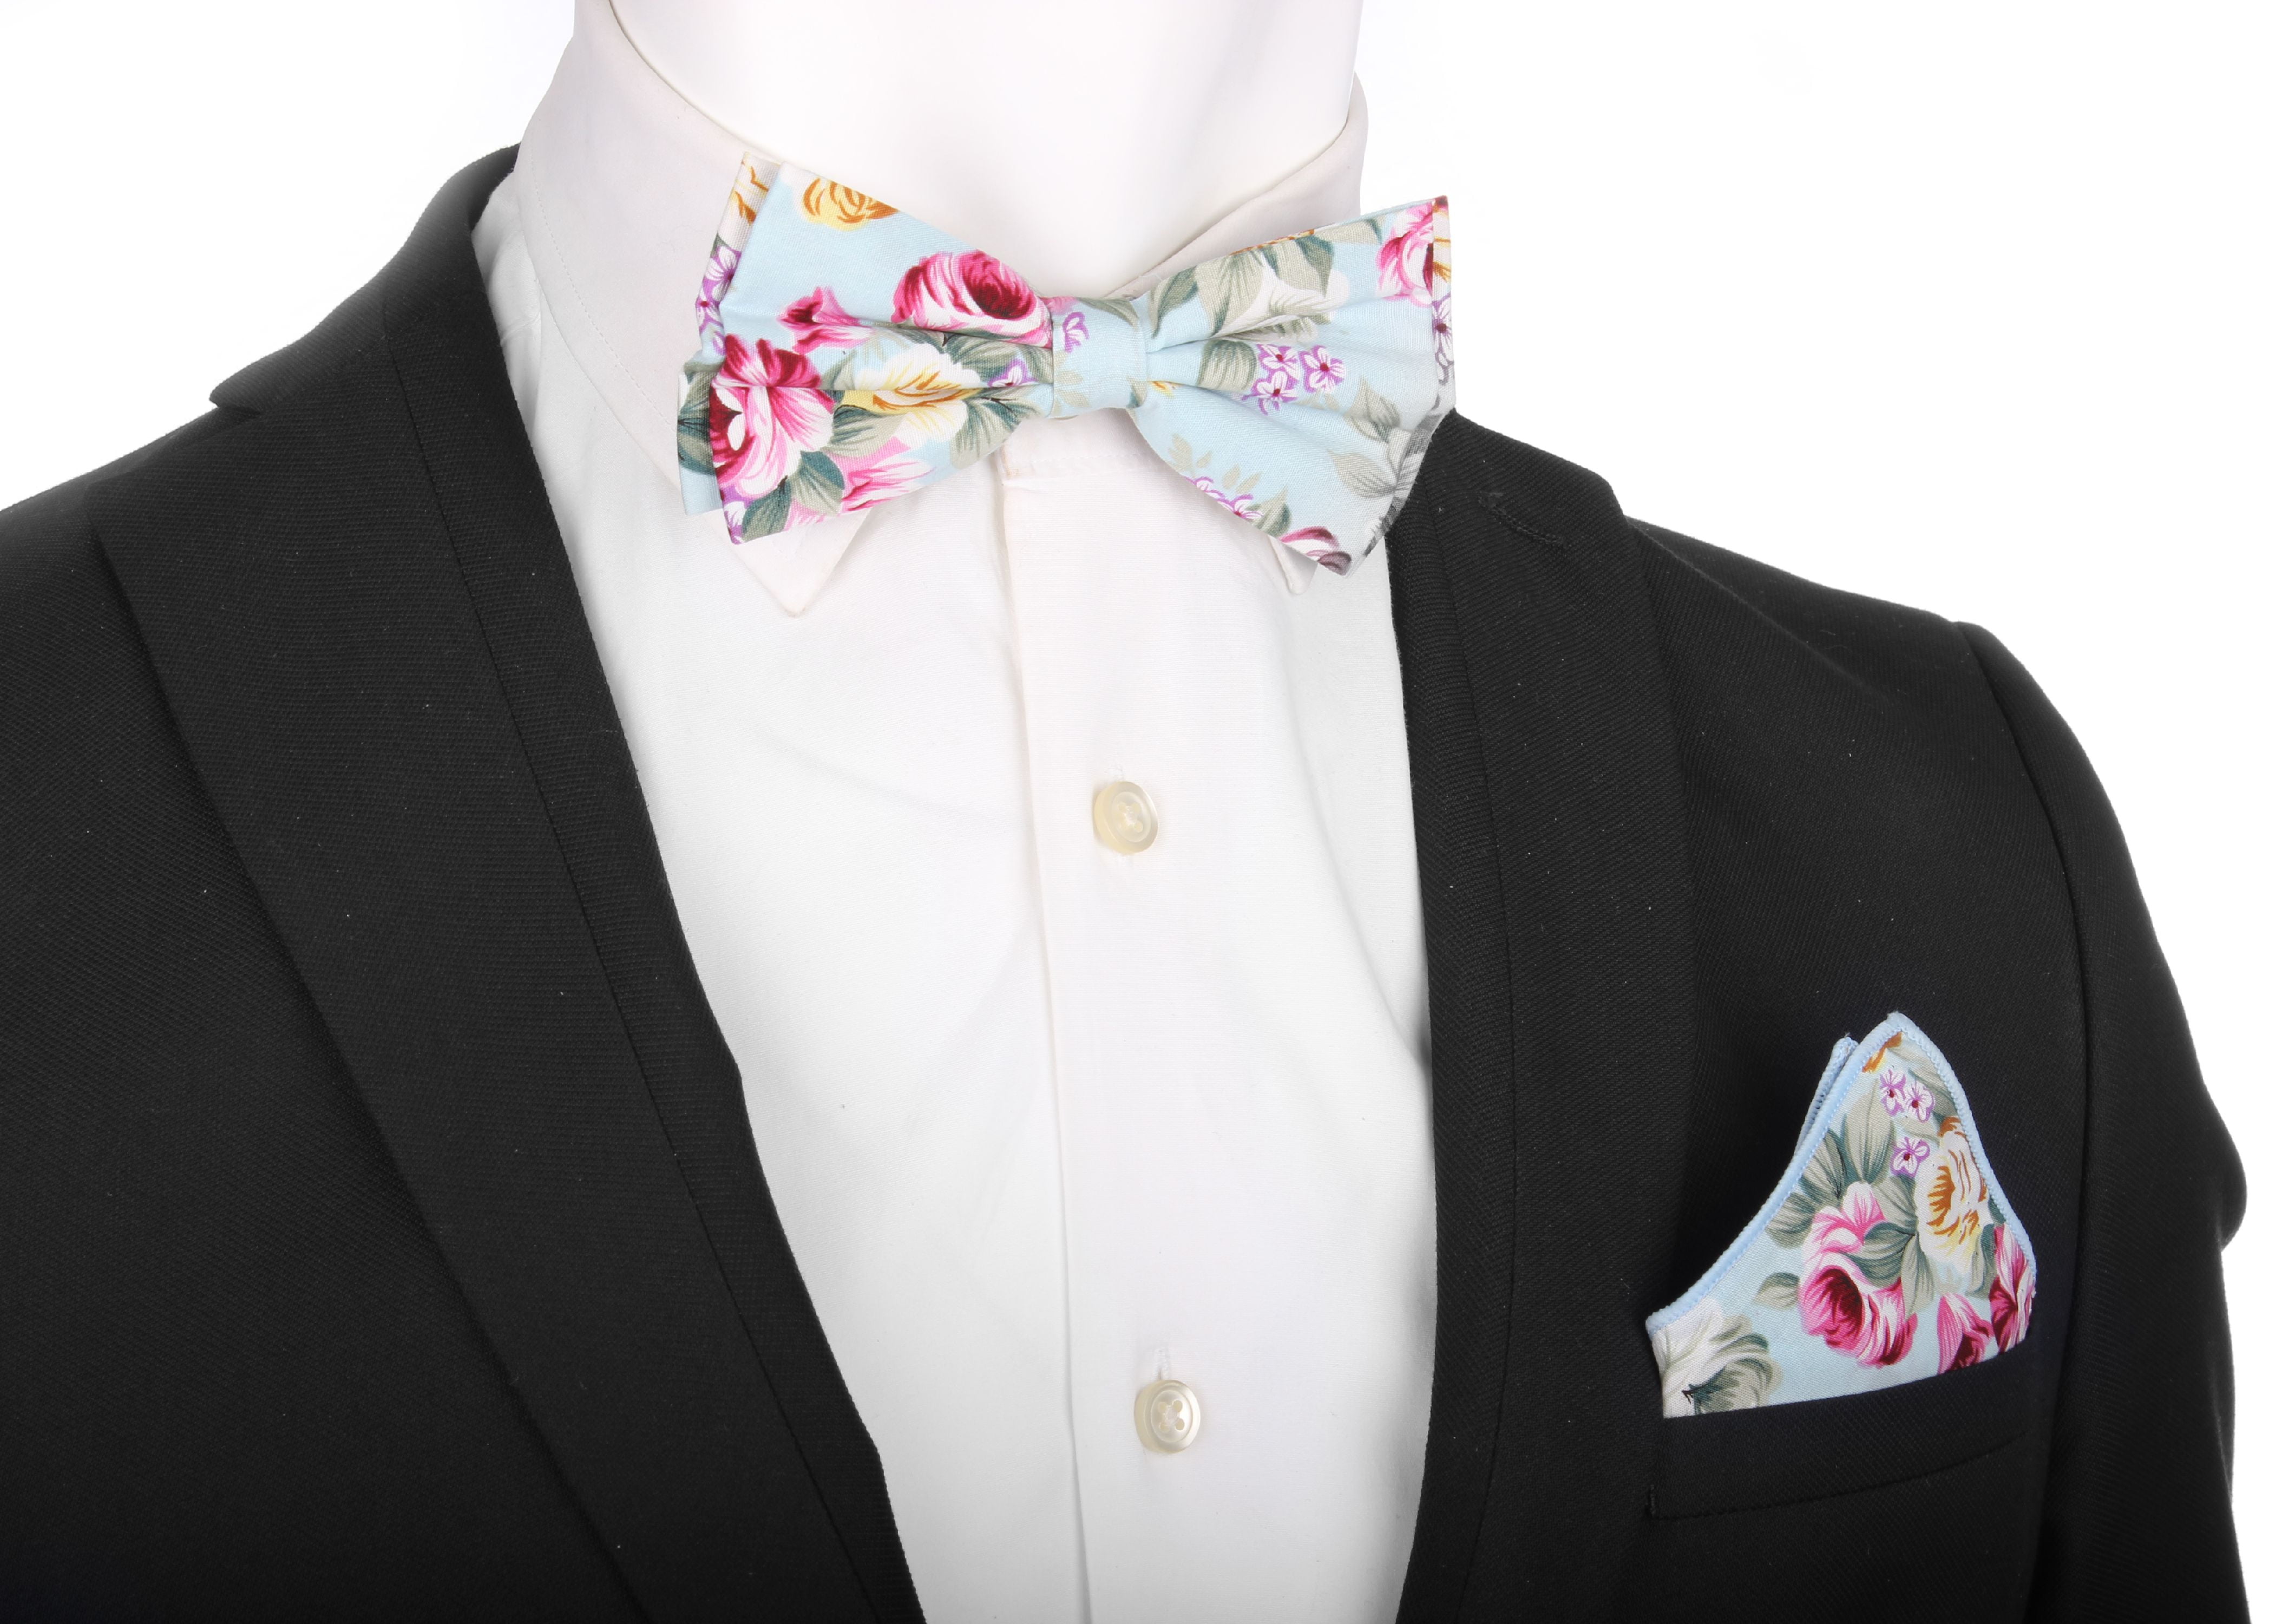 Mens Bow Ties Set 8 Packs Bridegroom Groomsman Adjustable Pre-tied Bowties Elegant Mixed Color Assorted Pattern